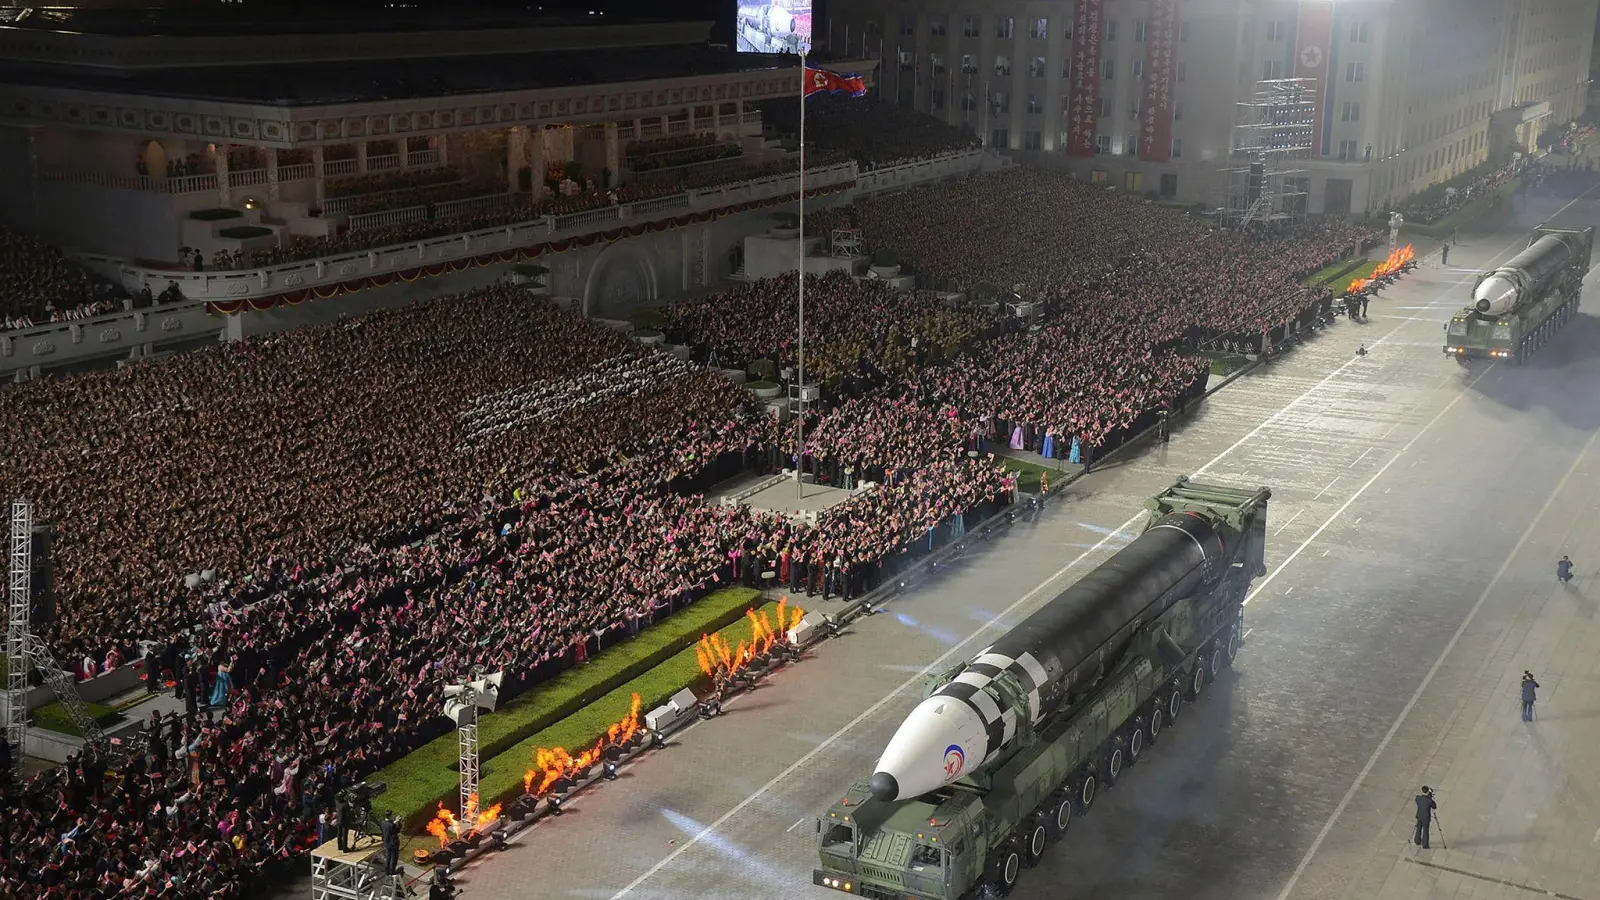 Eine nach Angaben der nordkoreanischen Regierung neu gebaute Interkontinentalrakete Hwasong-17. Gezeigt wurde die Rakete während einer Militärparade anlässlich des 90. Jahrestages der Gründung der Koreanischen Revolutionären Volksarmee (KVA) in Pjöngjang. (Foto: Uncredited/KCNA via KNS/AP/dpa)